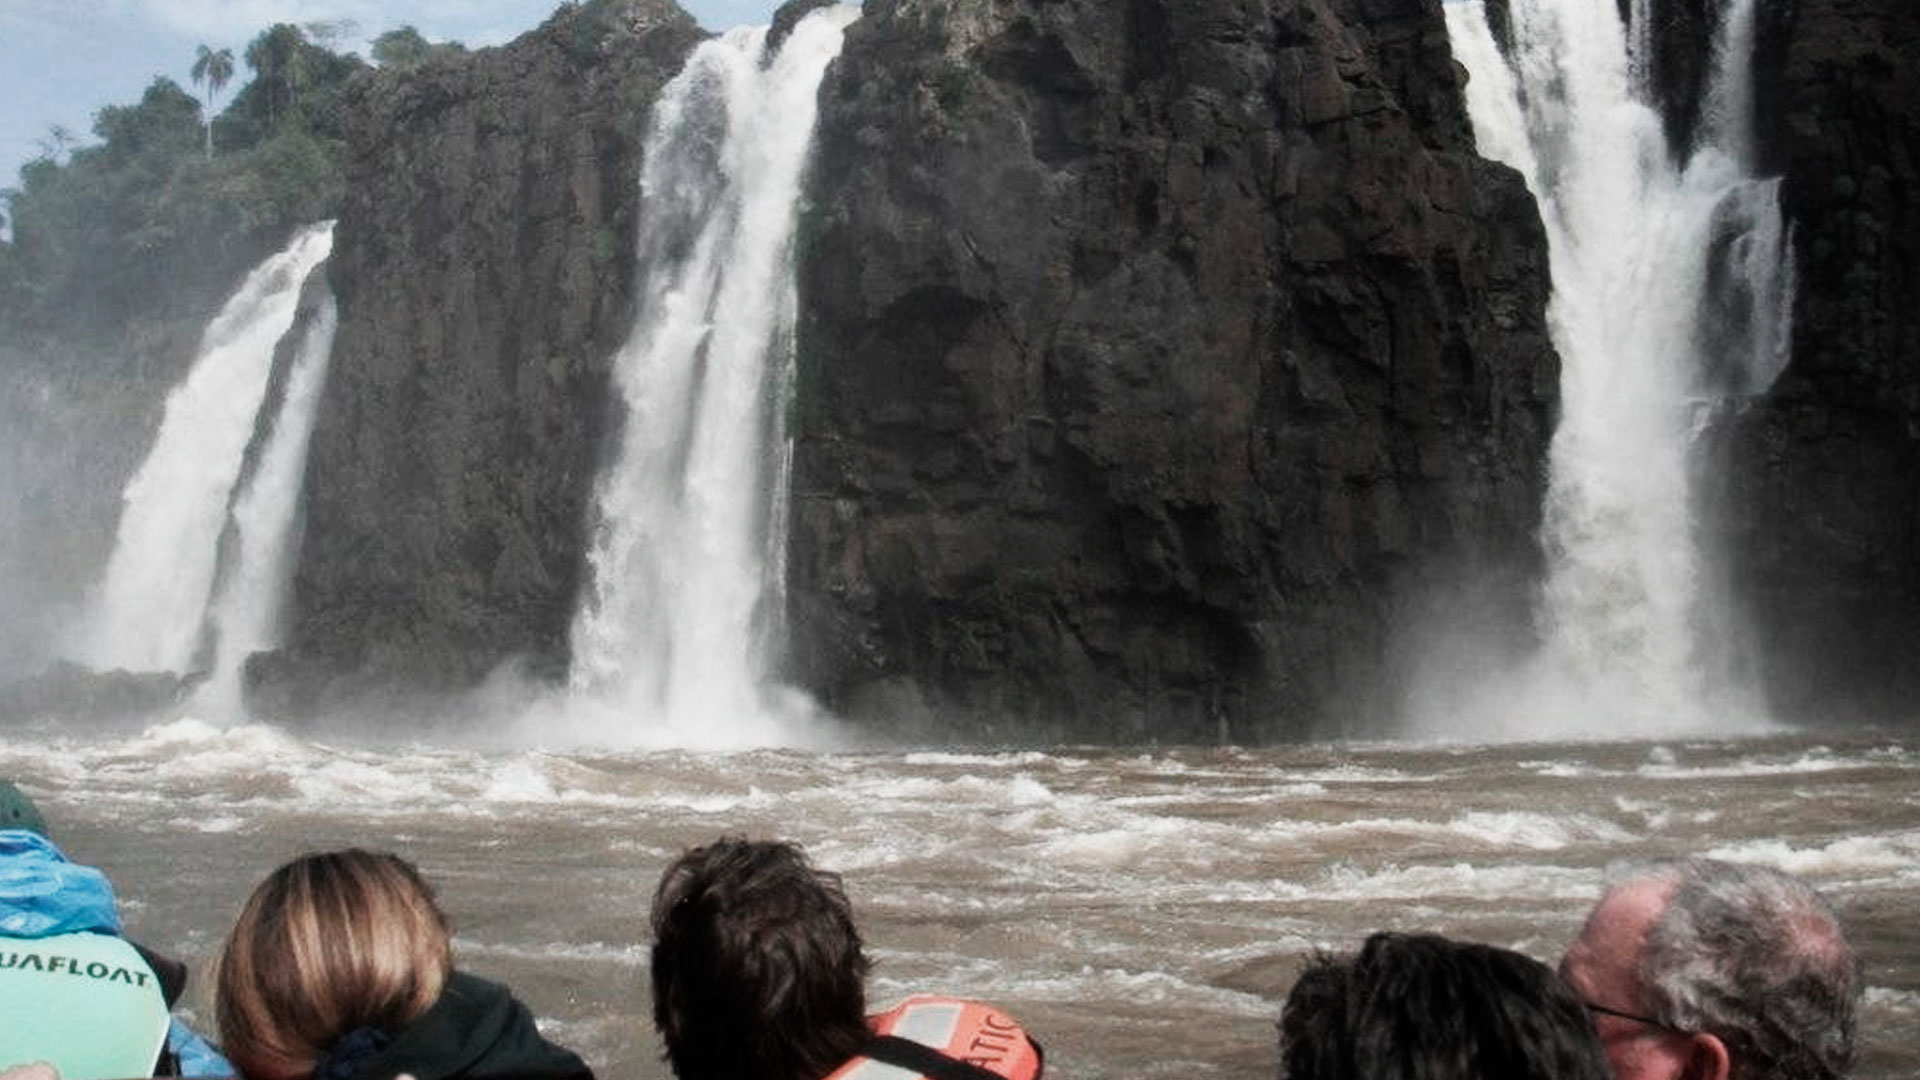 Grupo de pessoas praticando rafting no rio iguaçu, em Foz do Iguaçu. Em frente as quedas d'água